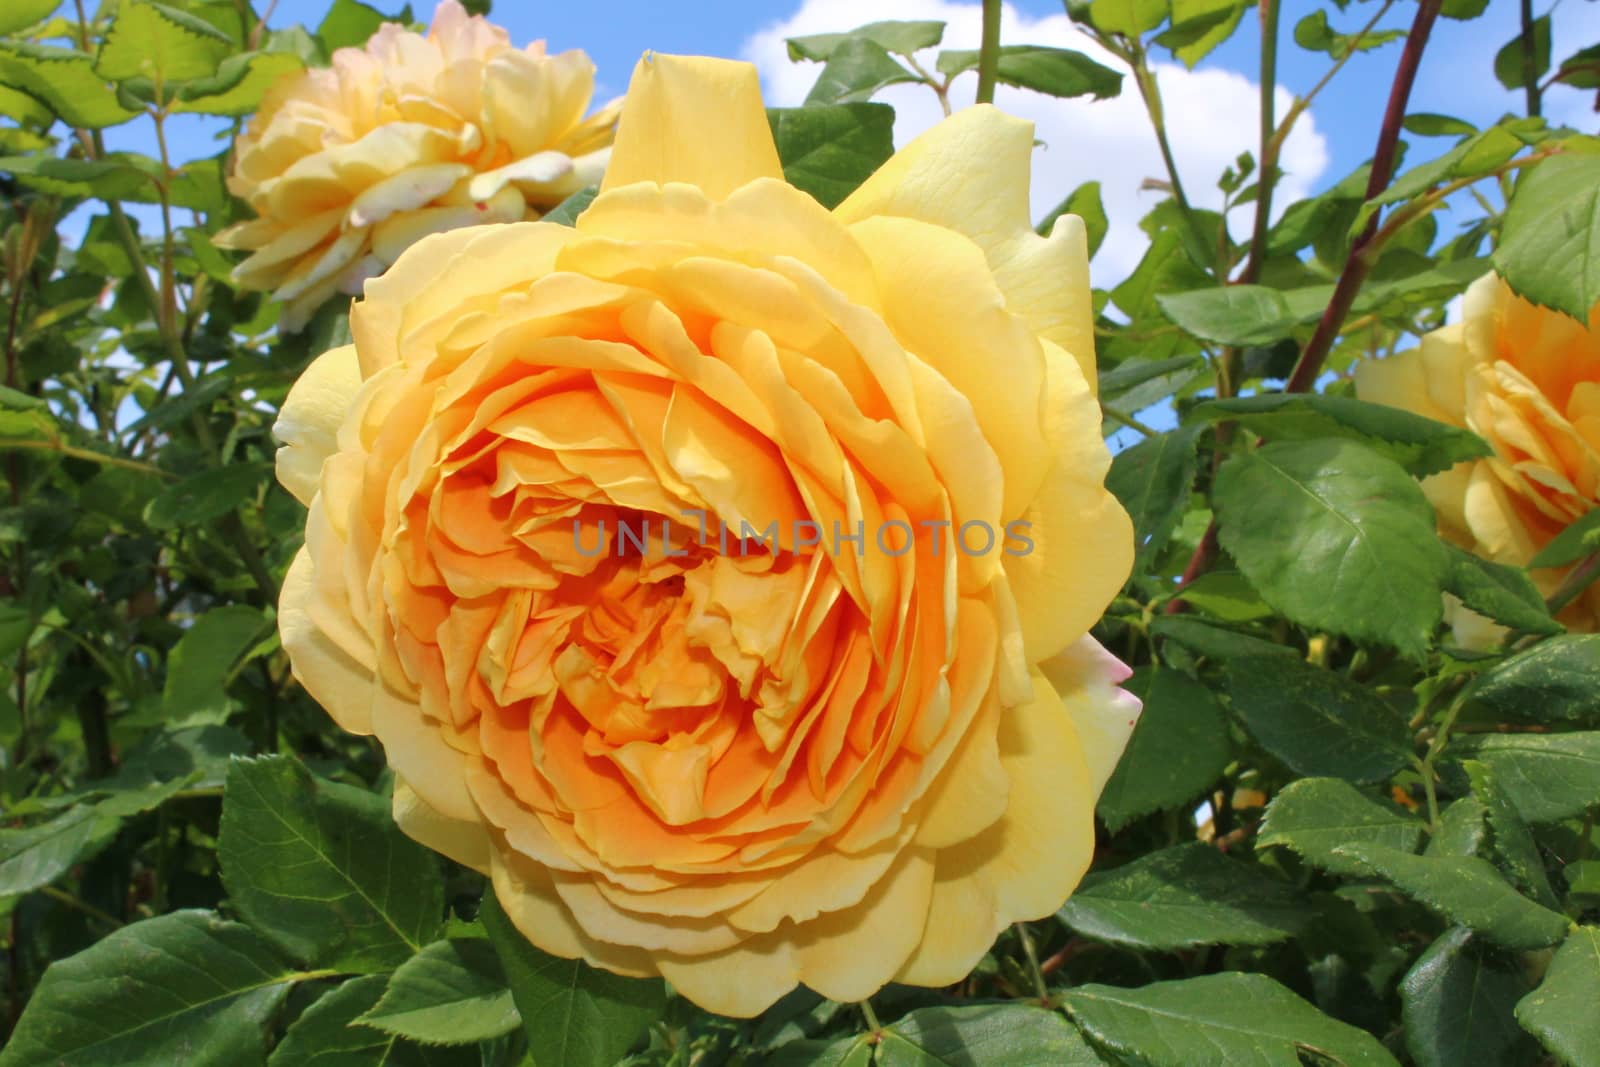 yellow rose in the garden by martina_unbehauen